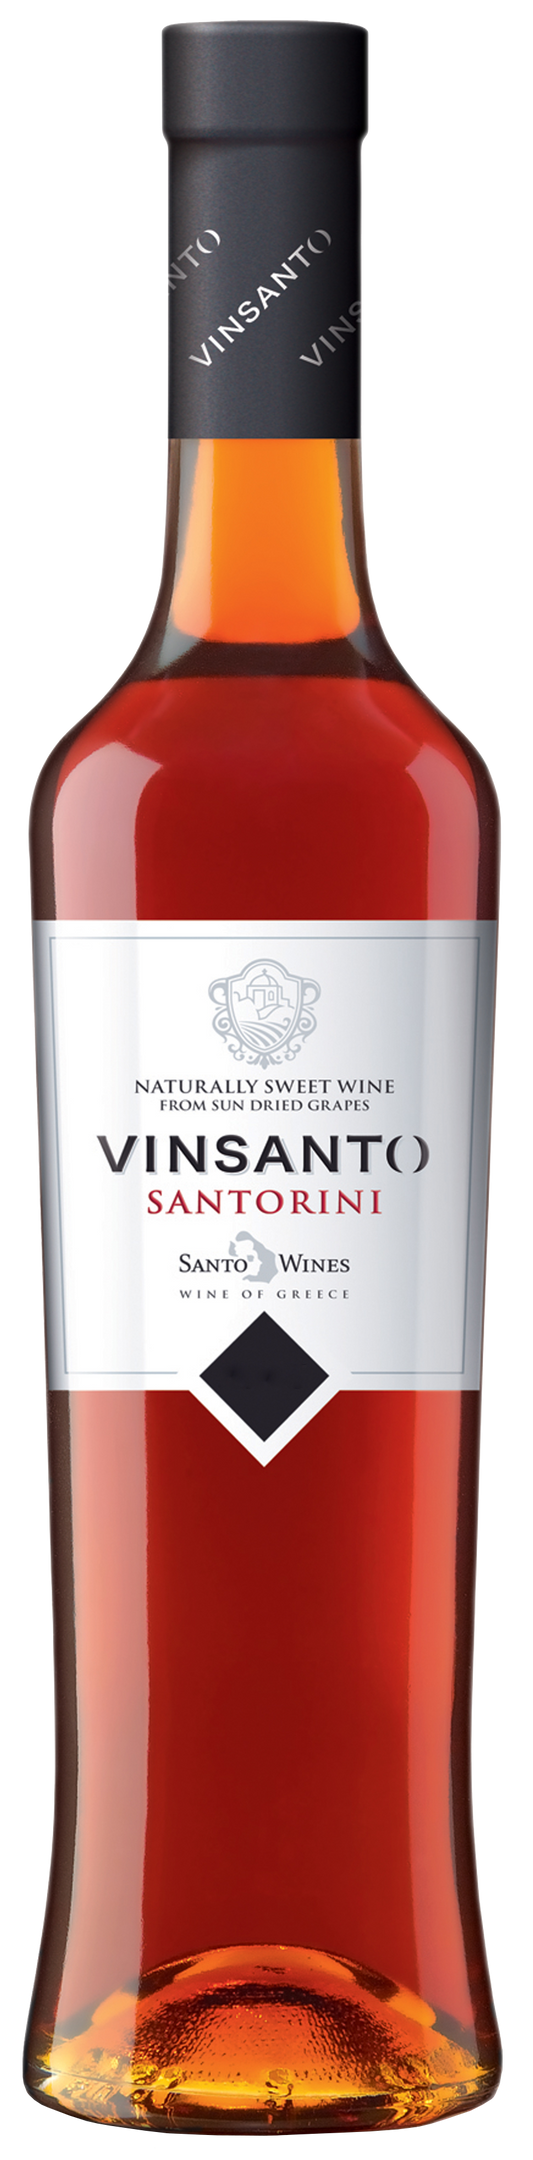 SANTO WINES SANTORINI VINSANTO 6 YEARS(500ml) 2013 